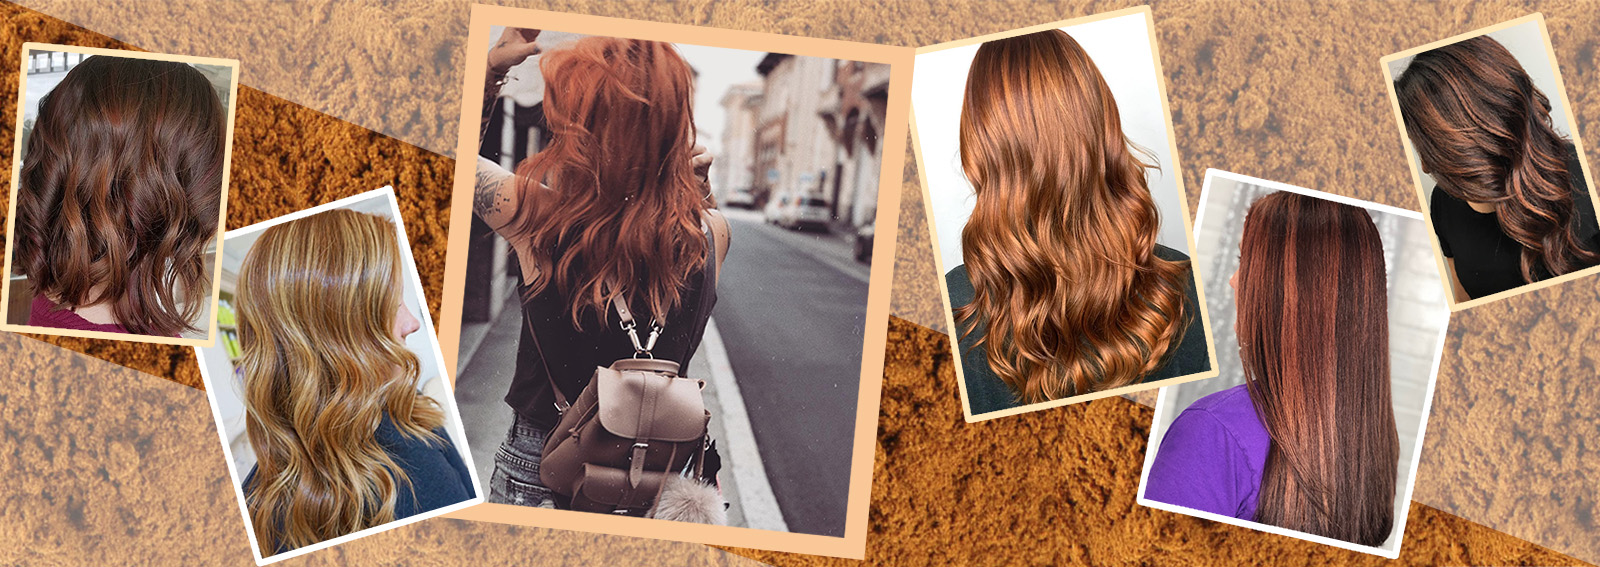 Cinnamon Hair la tinta capelli color cannella più hot del momento collage_desktop